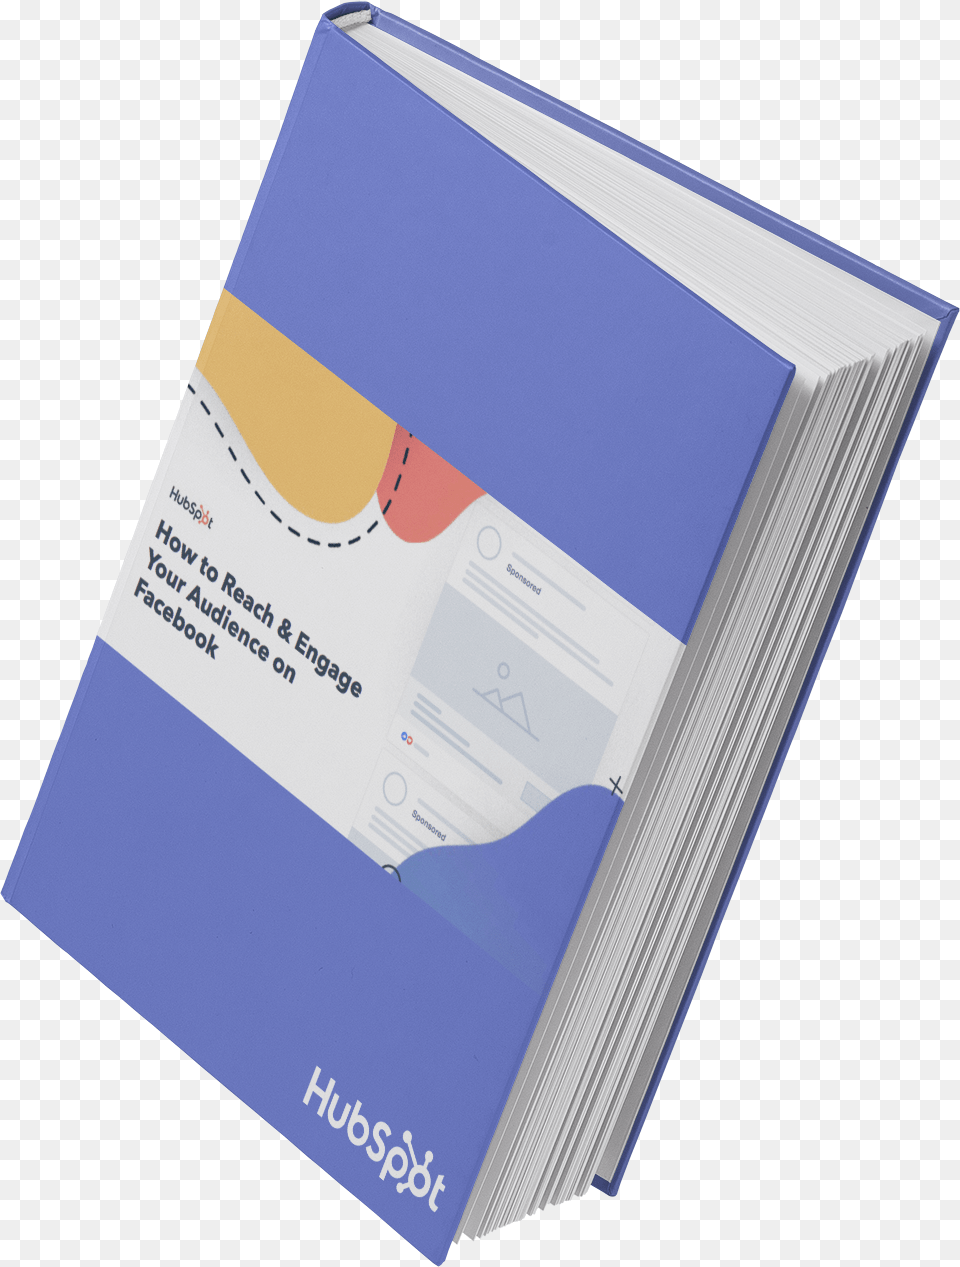 Public Relation Kit, Advertisement, Poster, File Binder, File Folder Png Image